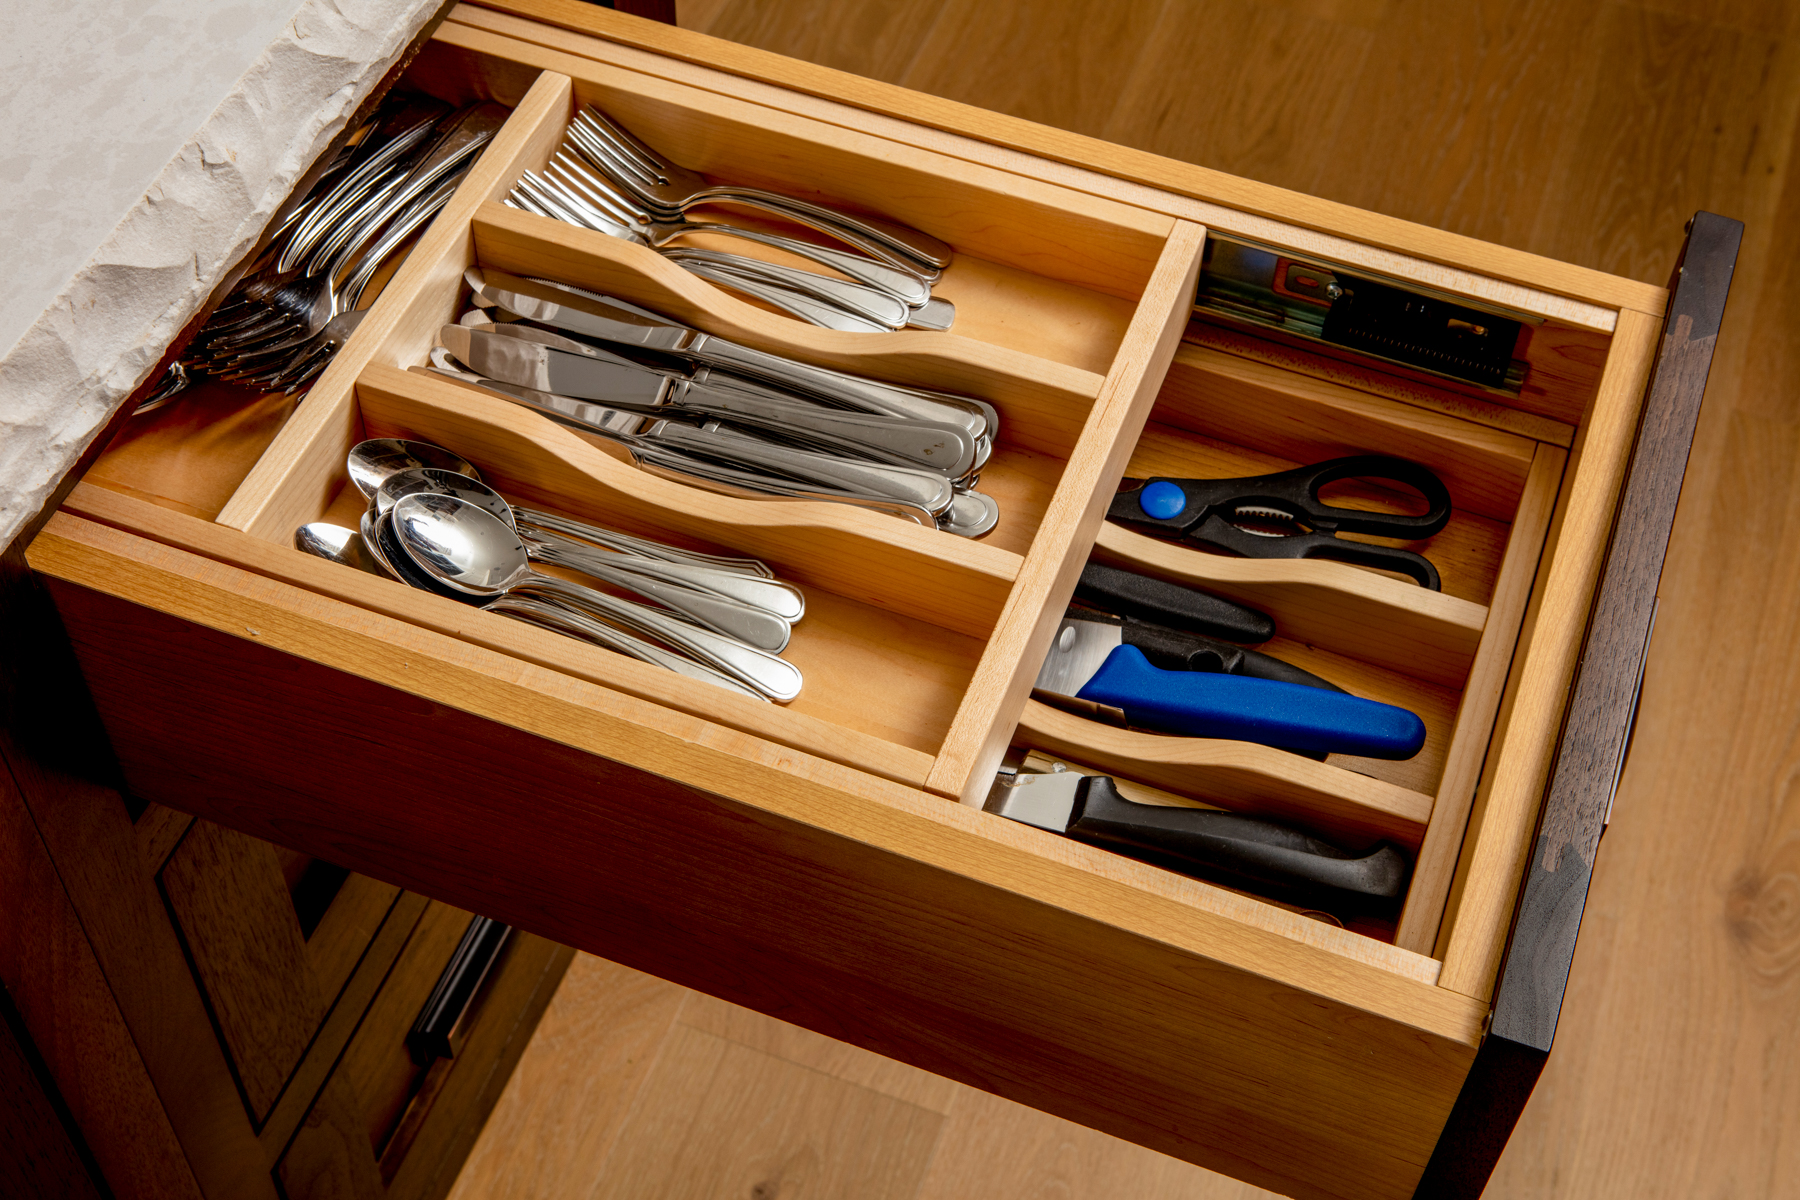 10 Types of Storage You Need in Your Next Kitchen | Chervin Kitchen & Bath | Morrison C Kitchen